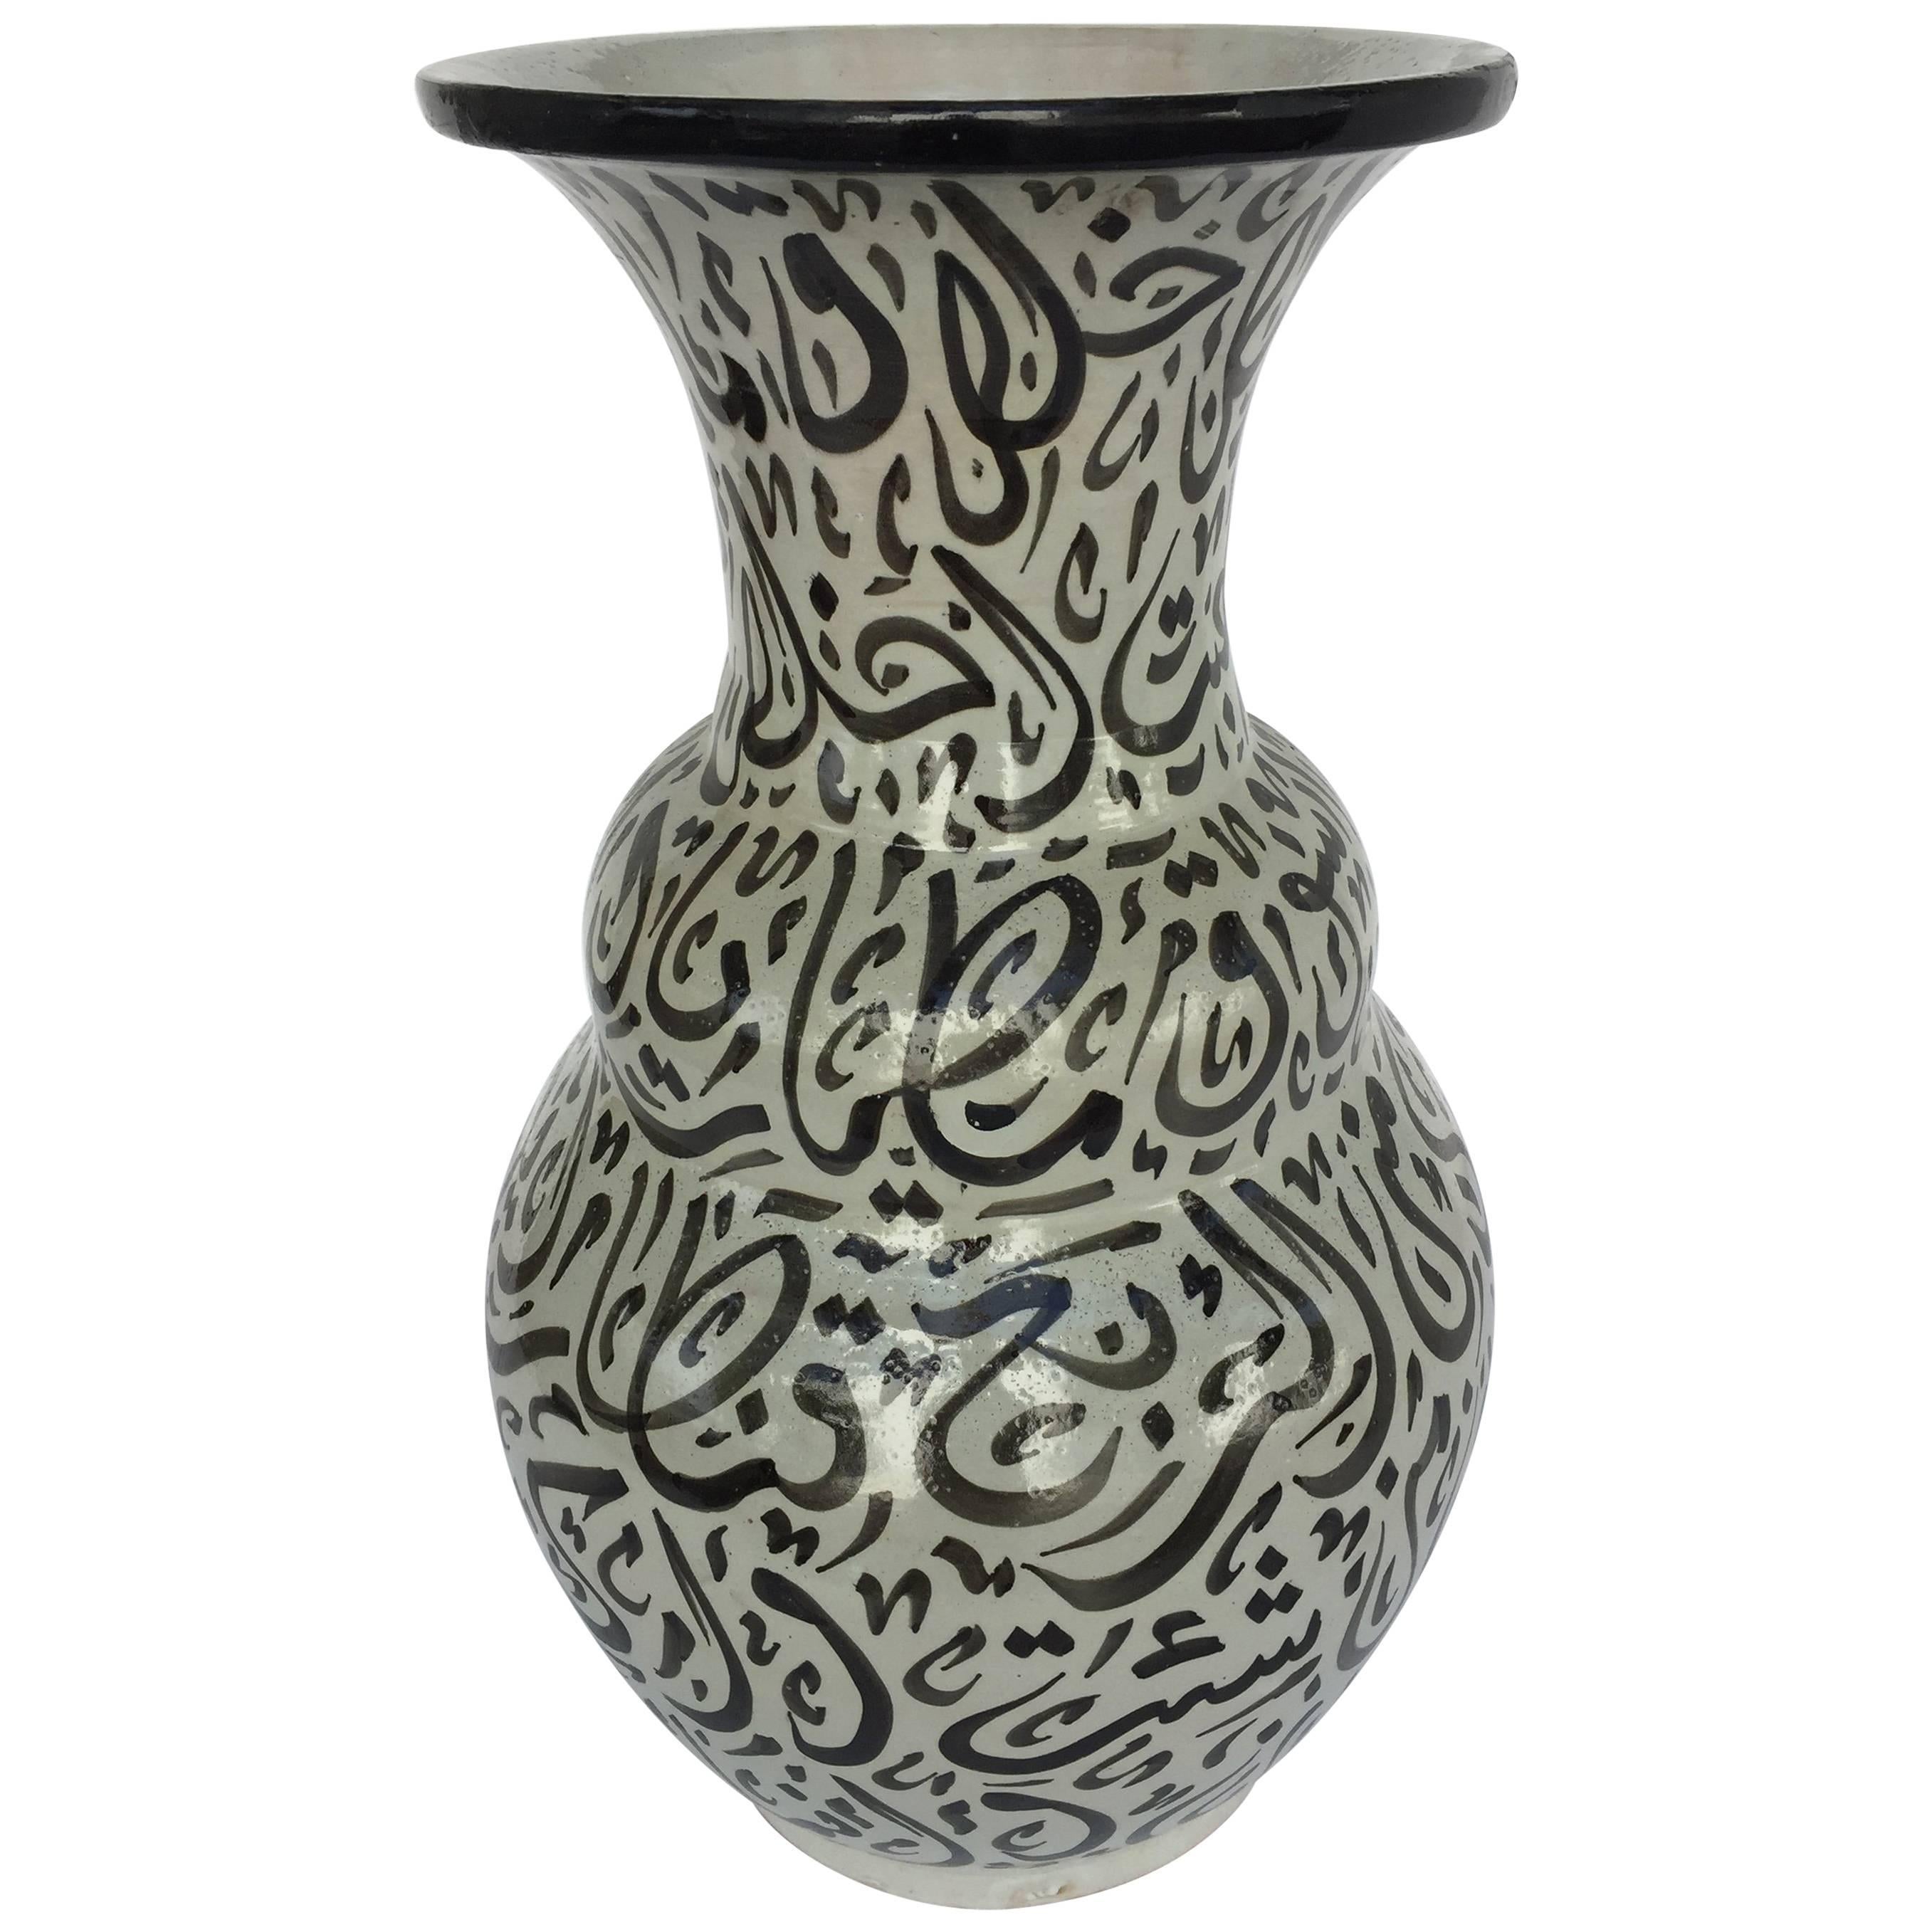 Grand vase marocain en céramique émaillée de Fez avec calligraphie arabe